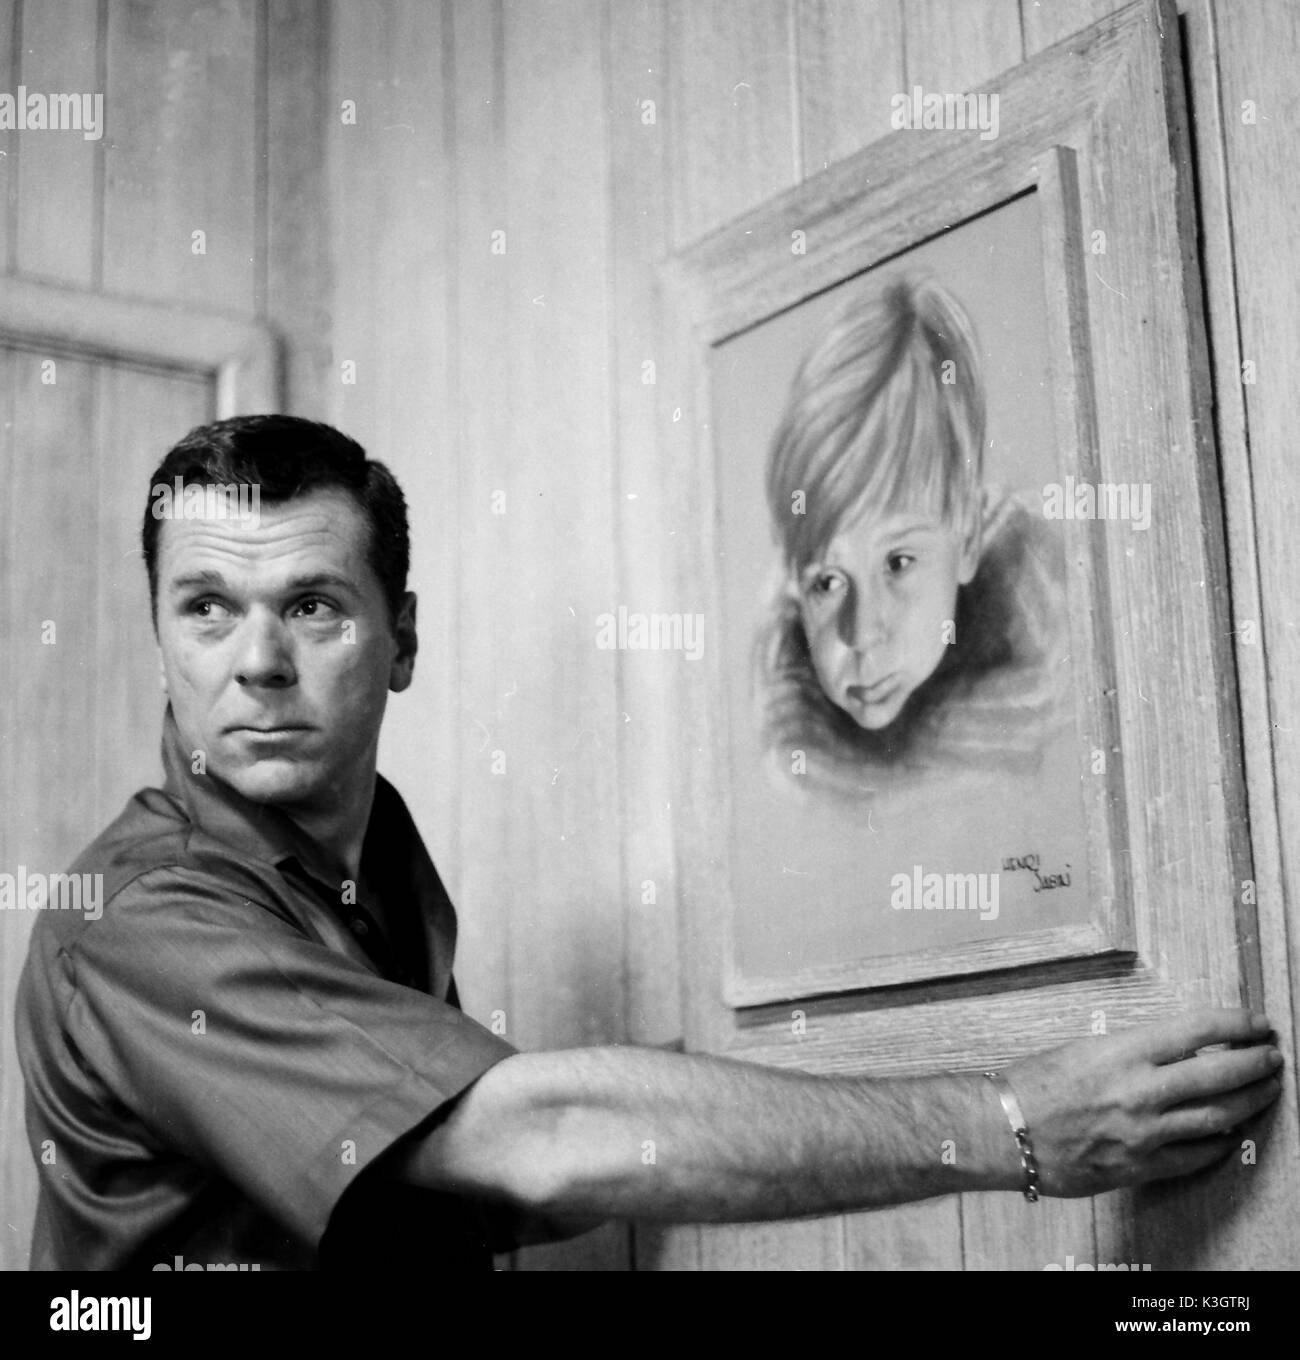 JACKIE COOPER attore americano, a casa con un dipinto di se stesso come attore del bambino Foto Stock